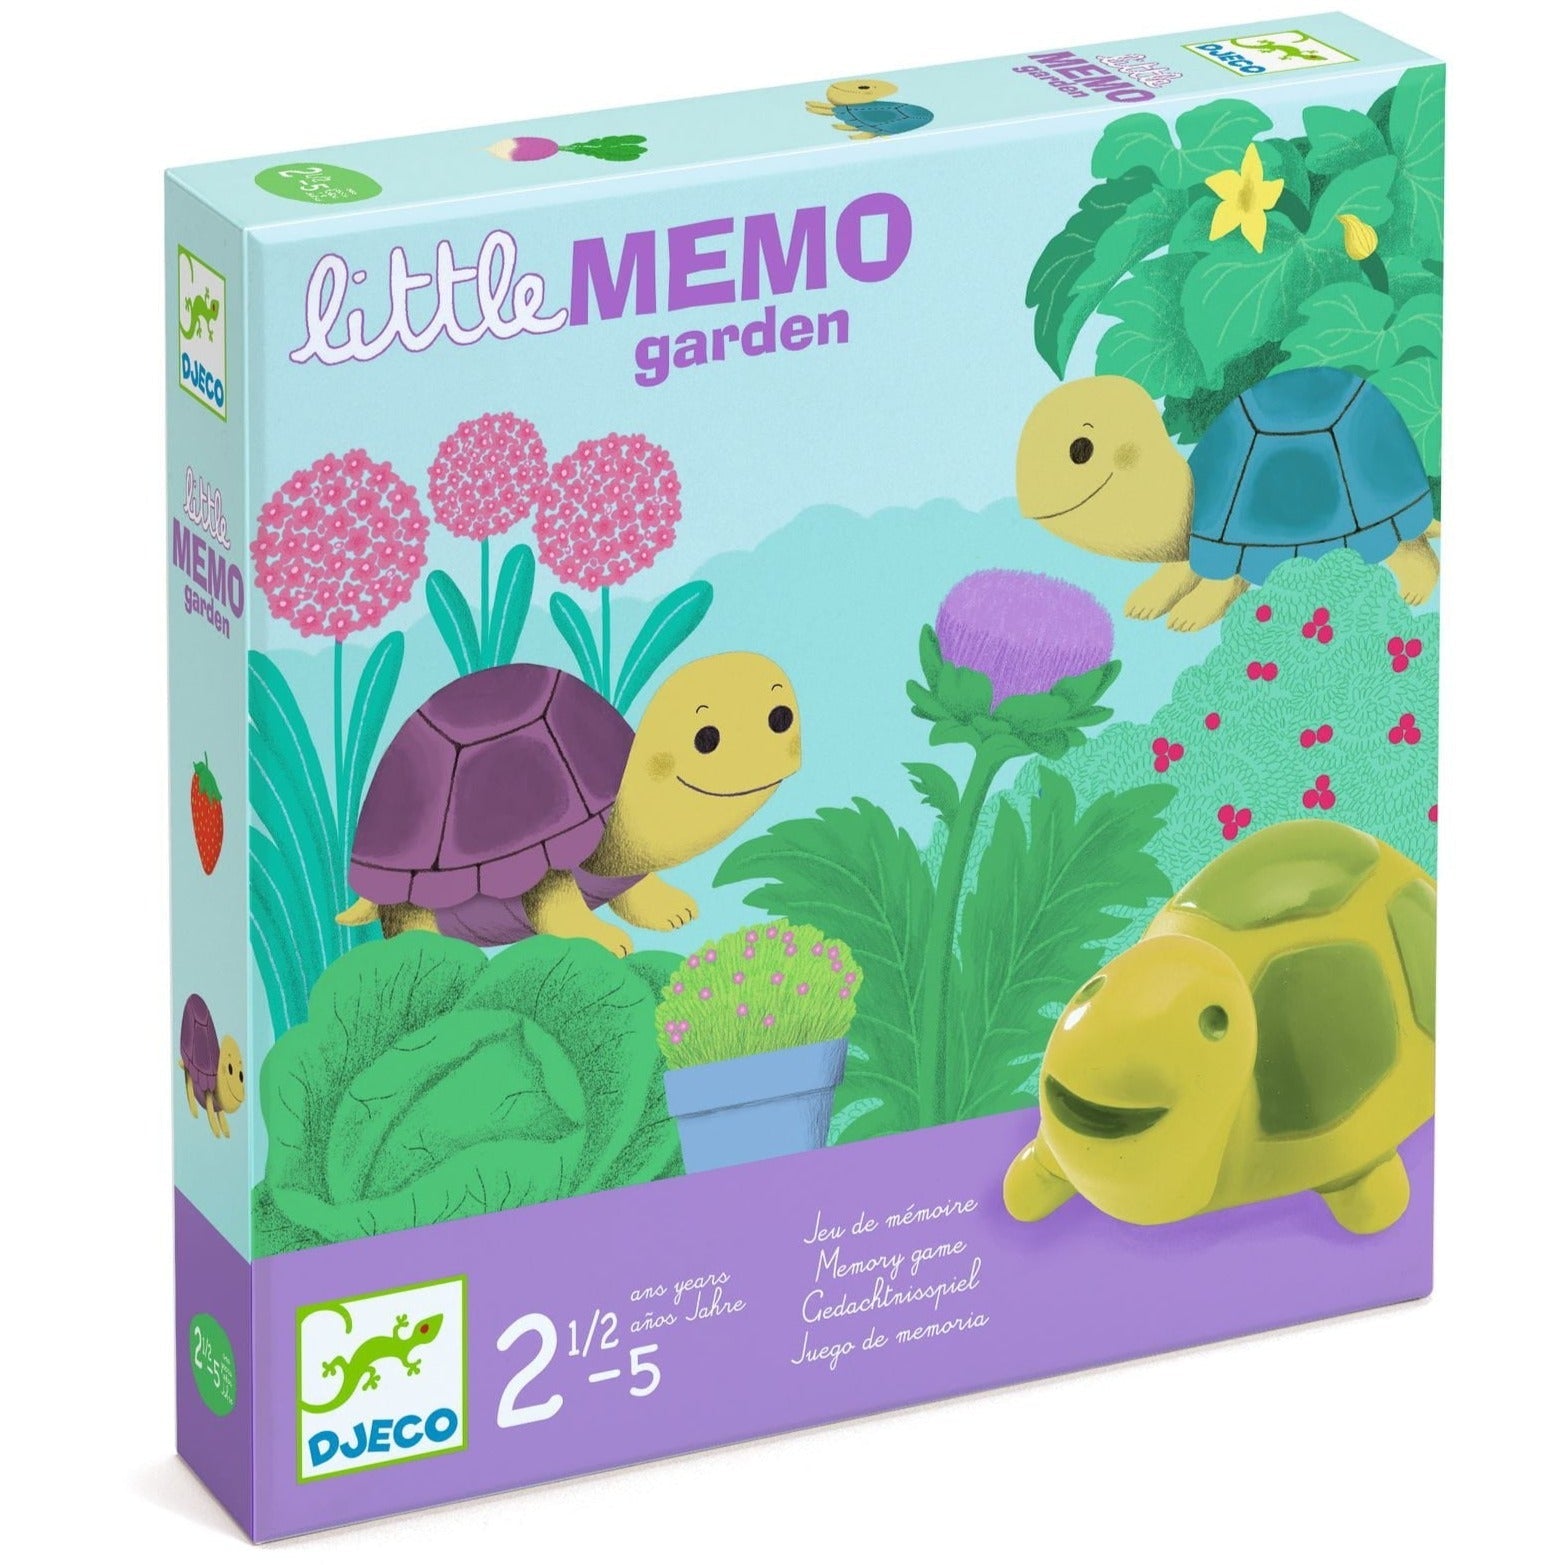 Djeco: Little Memo Memo Garden Memory Game